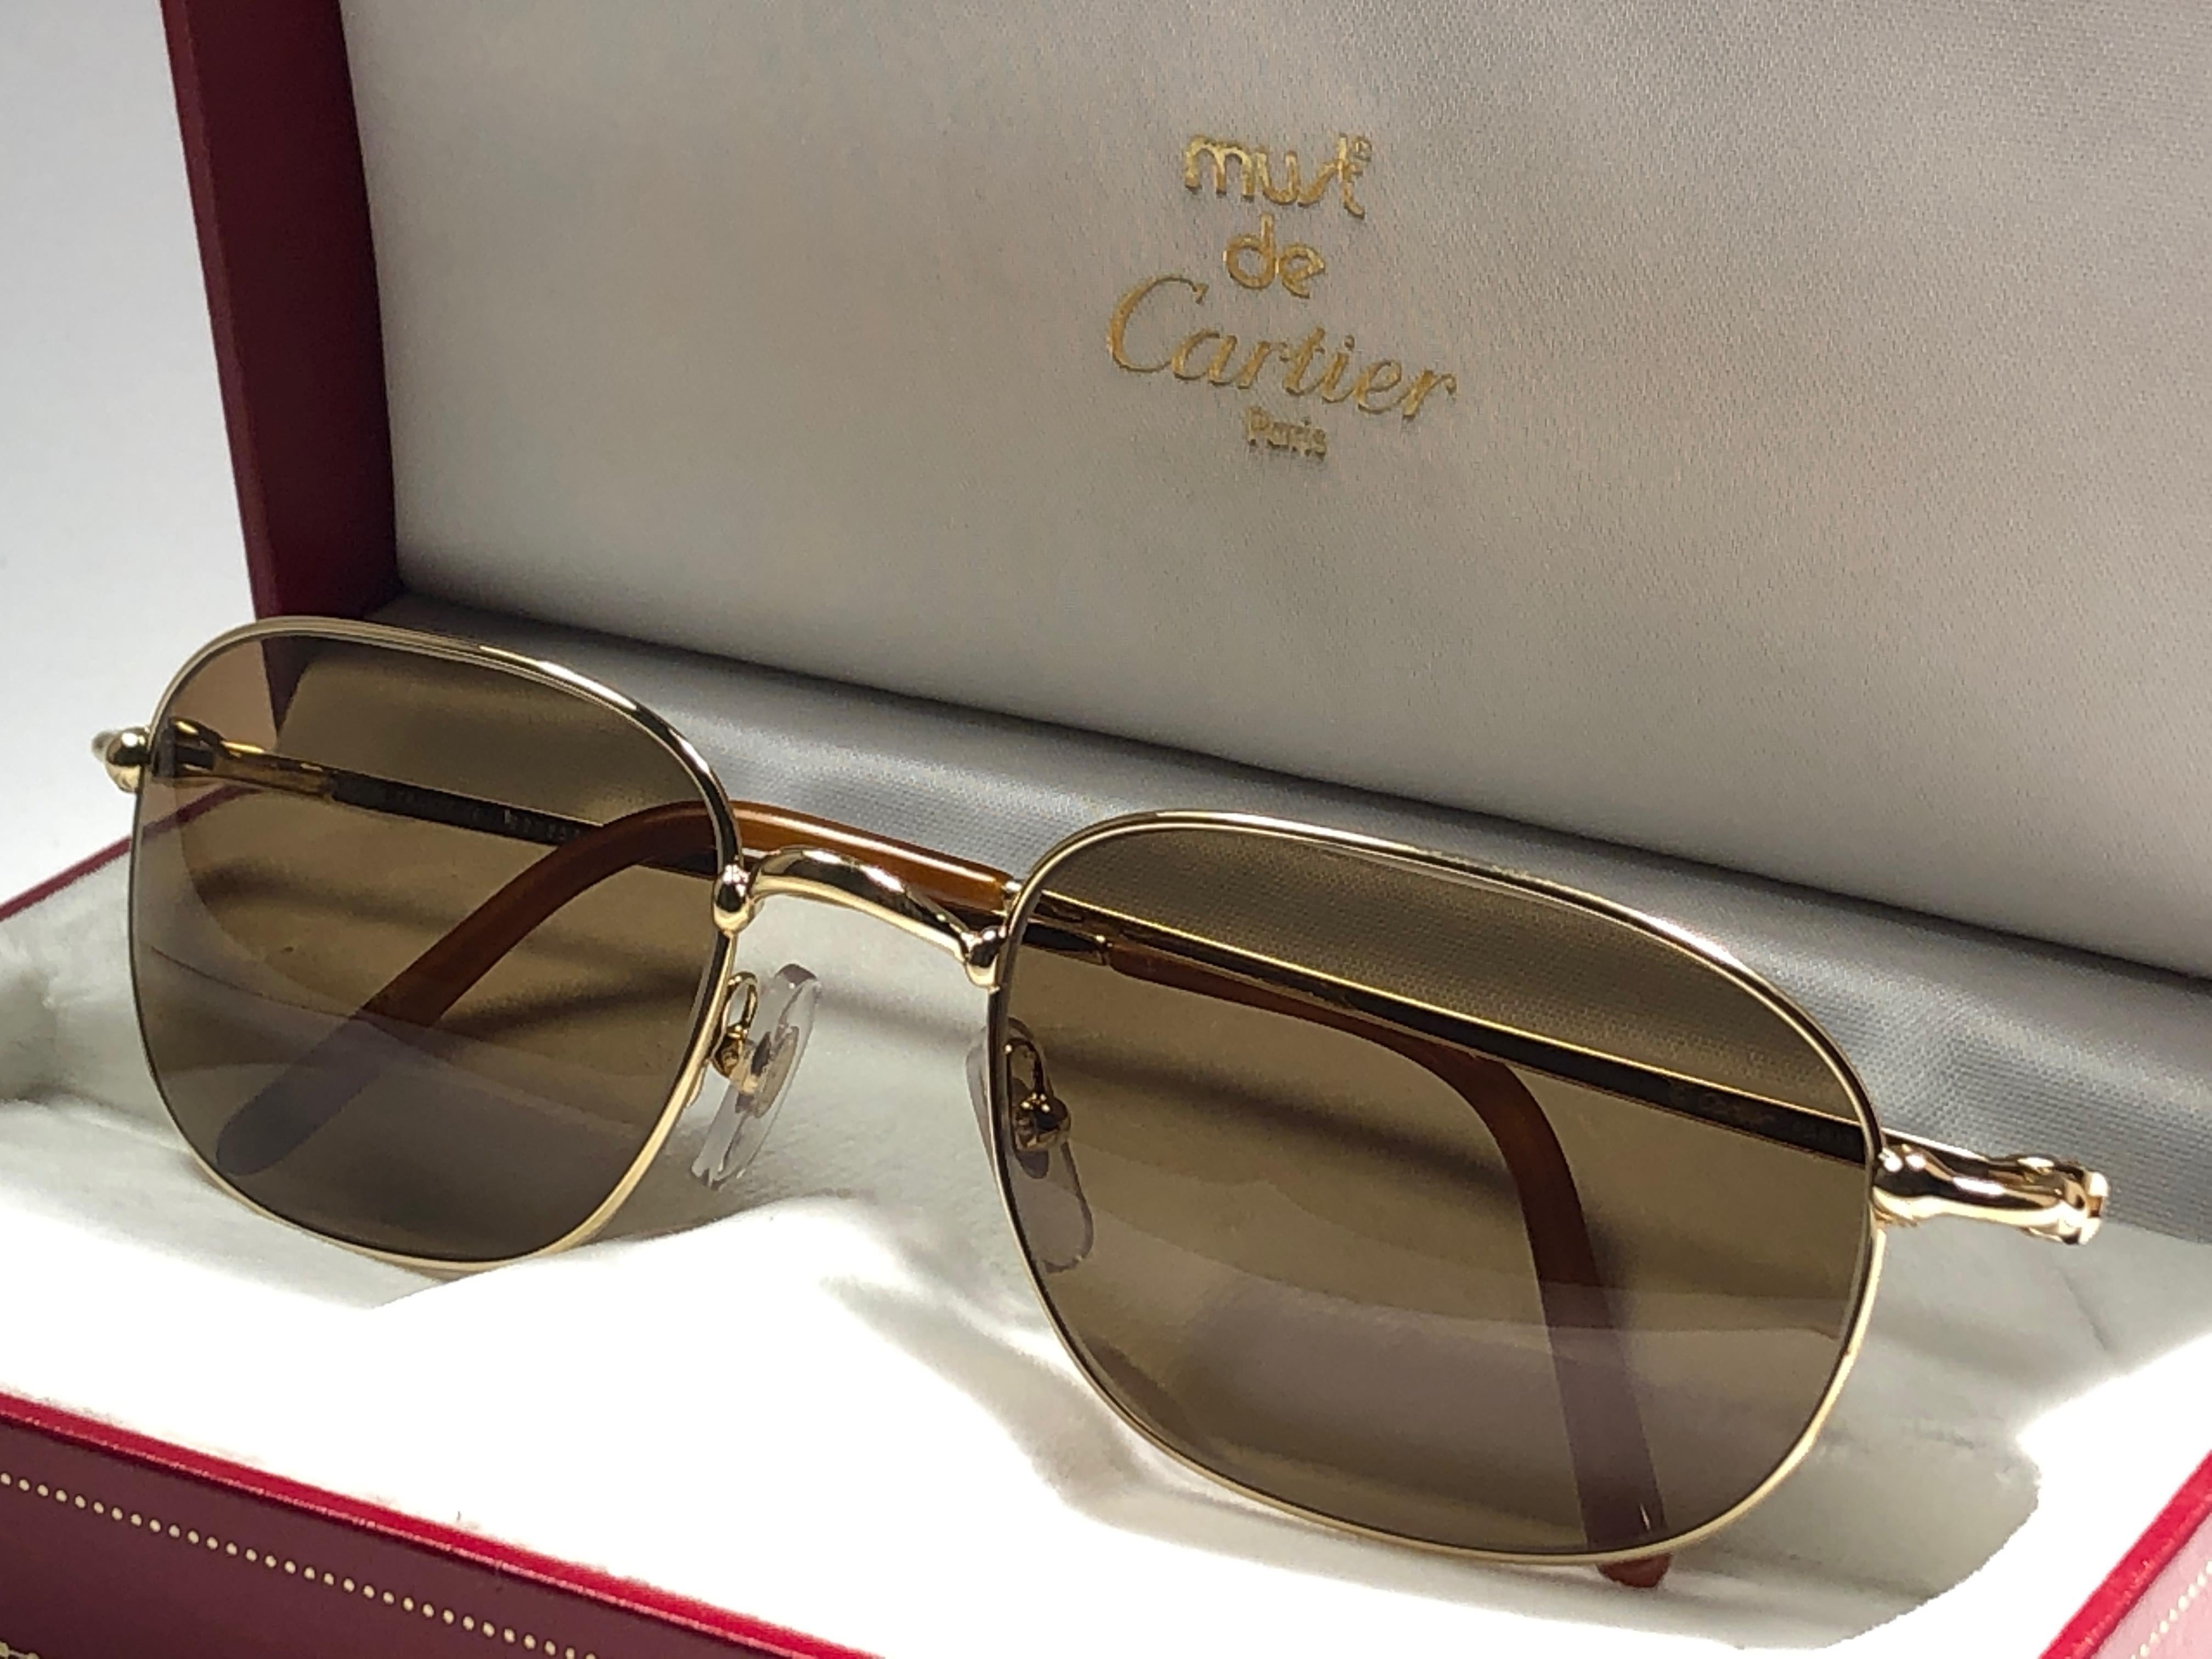 New Vintage Cartier Vesta 56mm Gold Plated Frame France 1990 Sunglasses For Sale 1